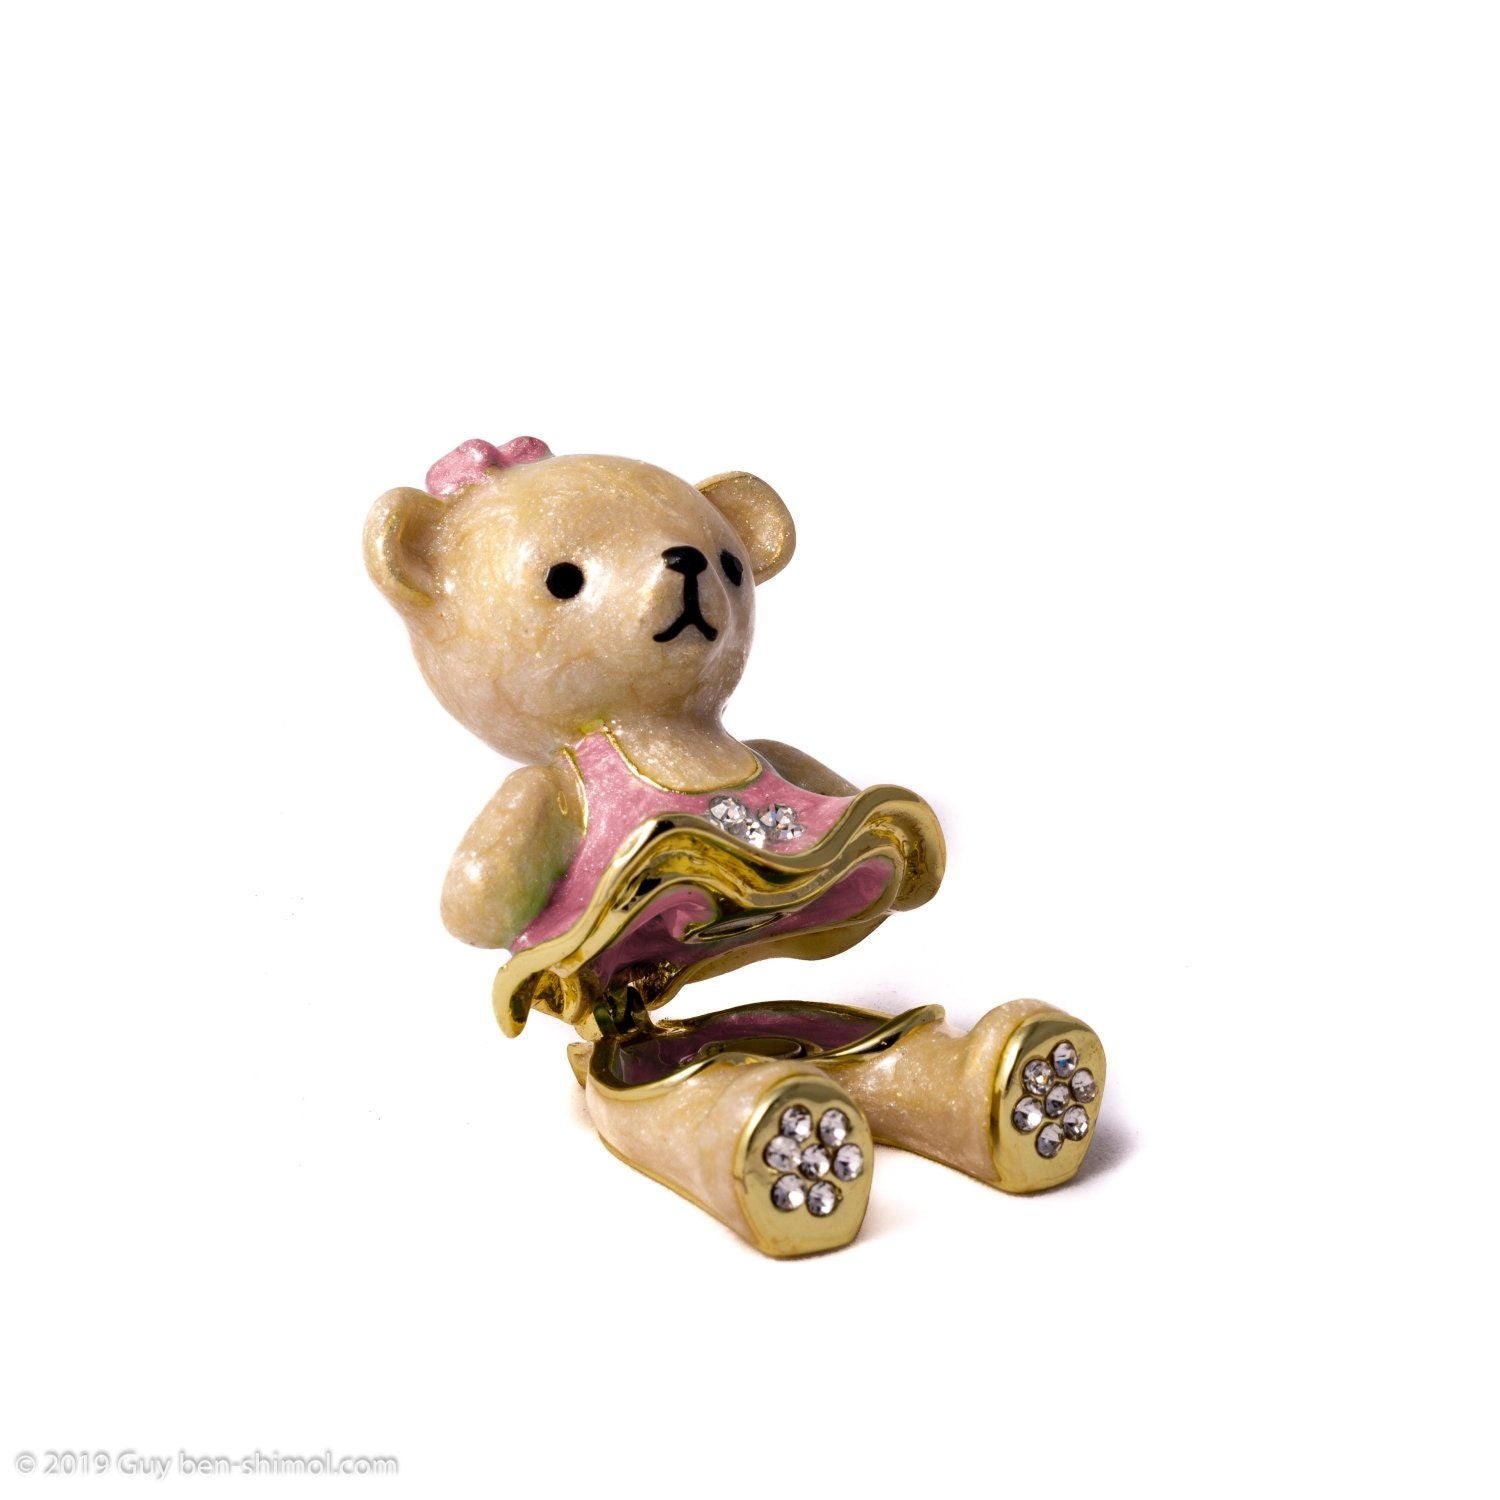 Teddy Bear with Pink Dress Baby Shower Keren Kopal